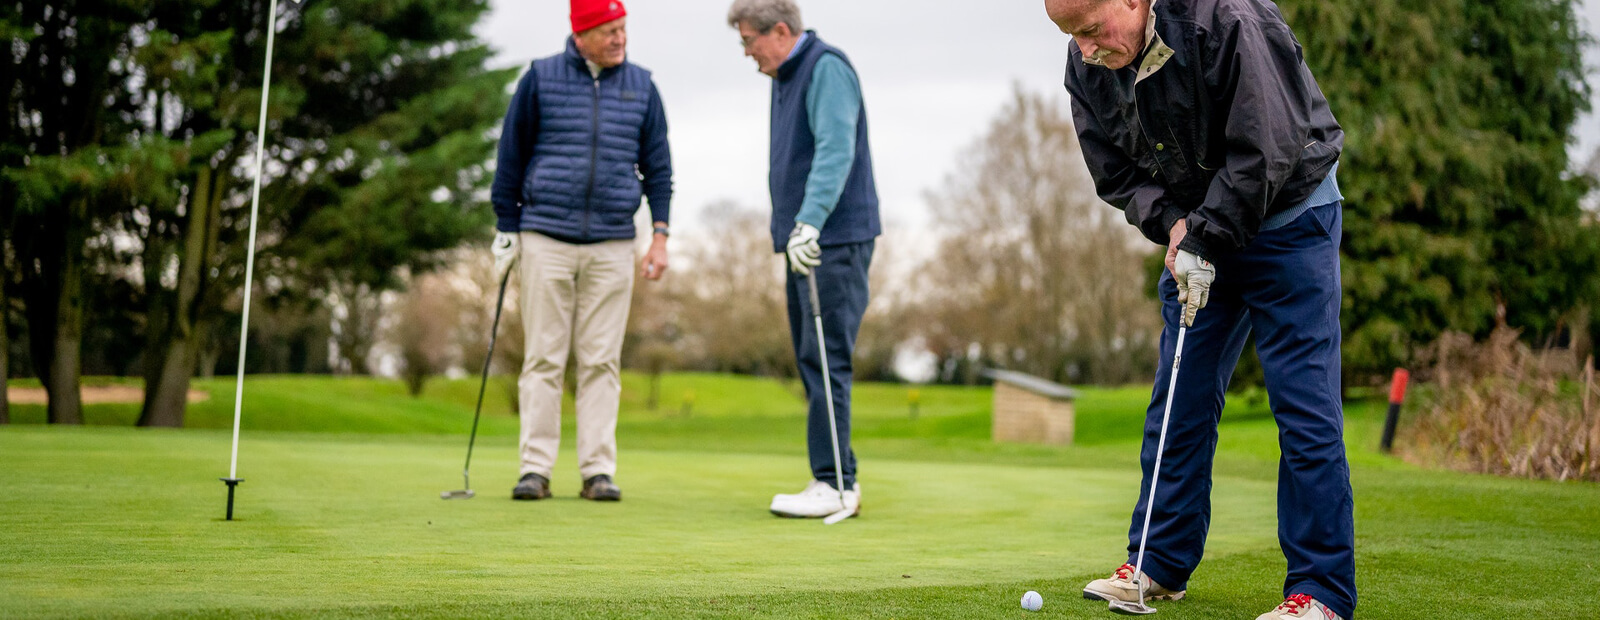 Voetklachten bij oudere golfspelers